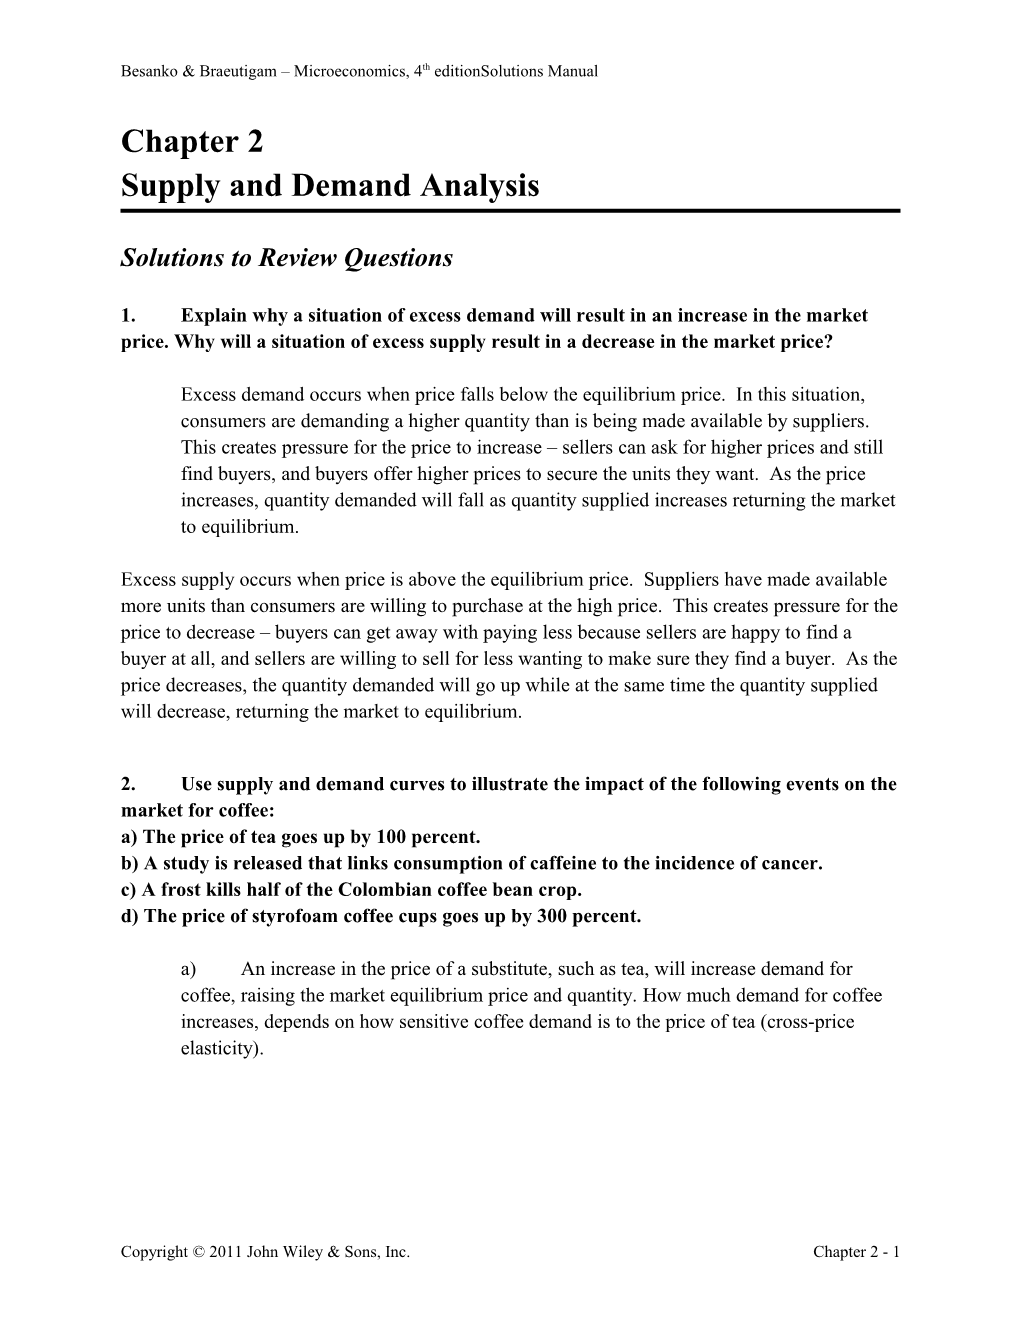 Supply and Demand Analysis